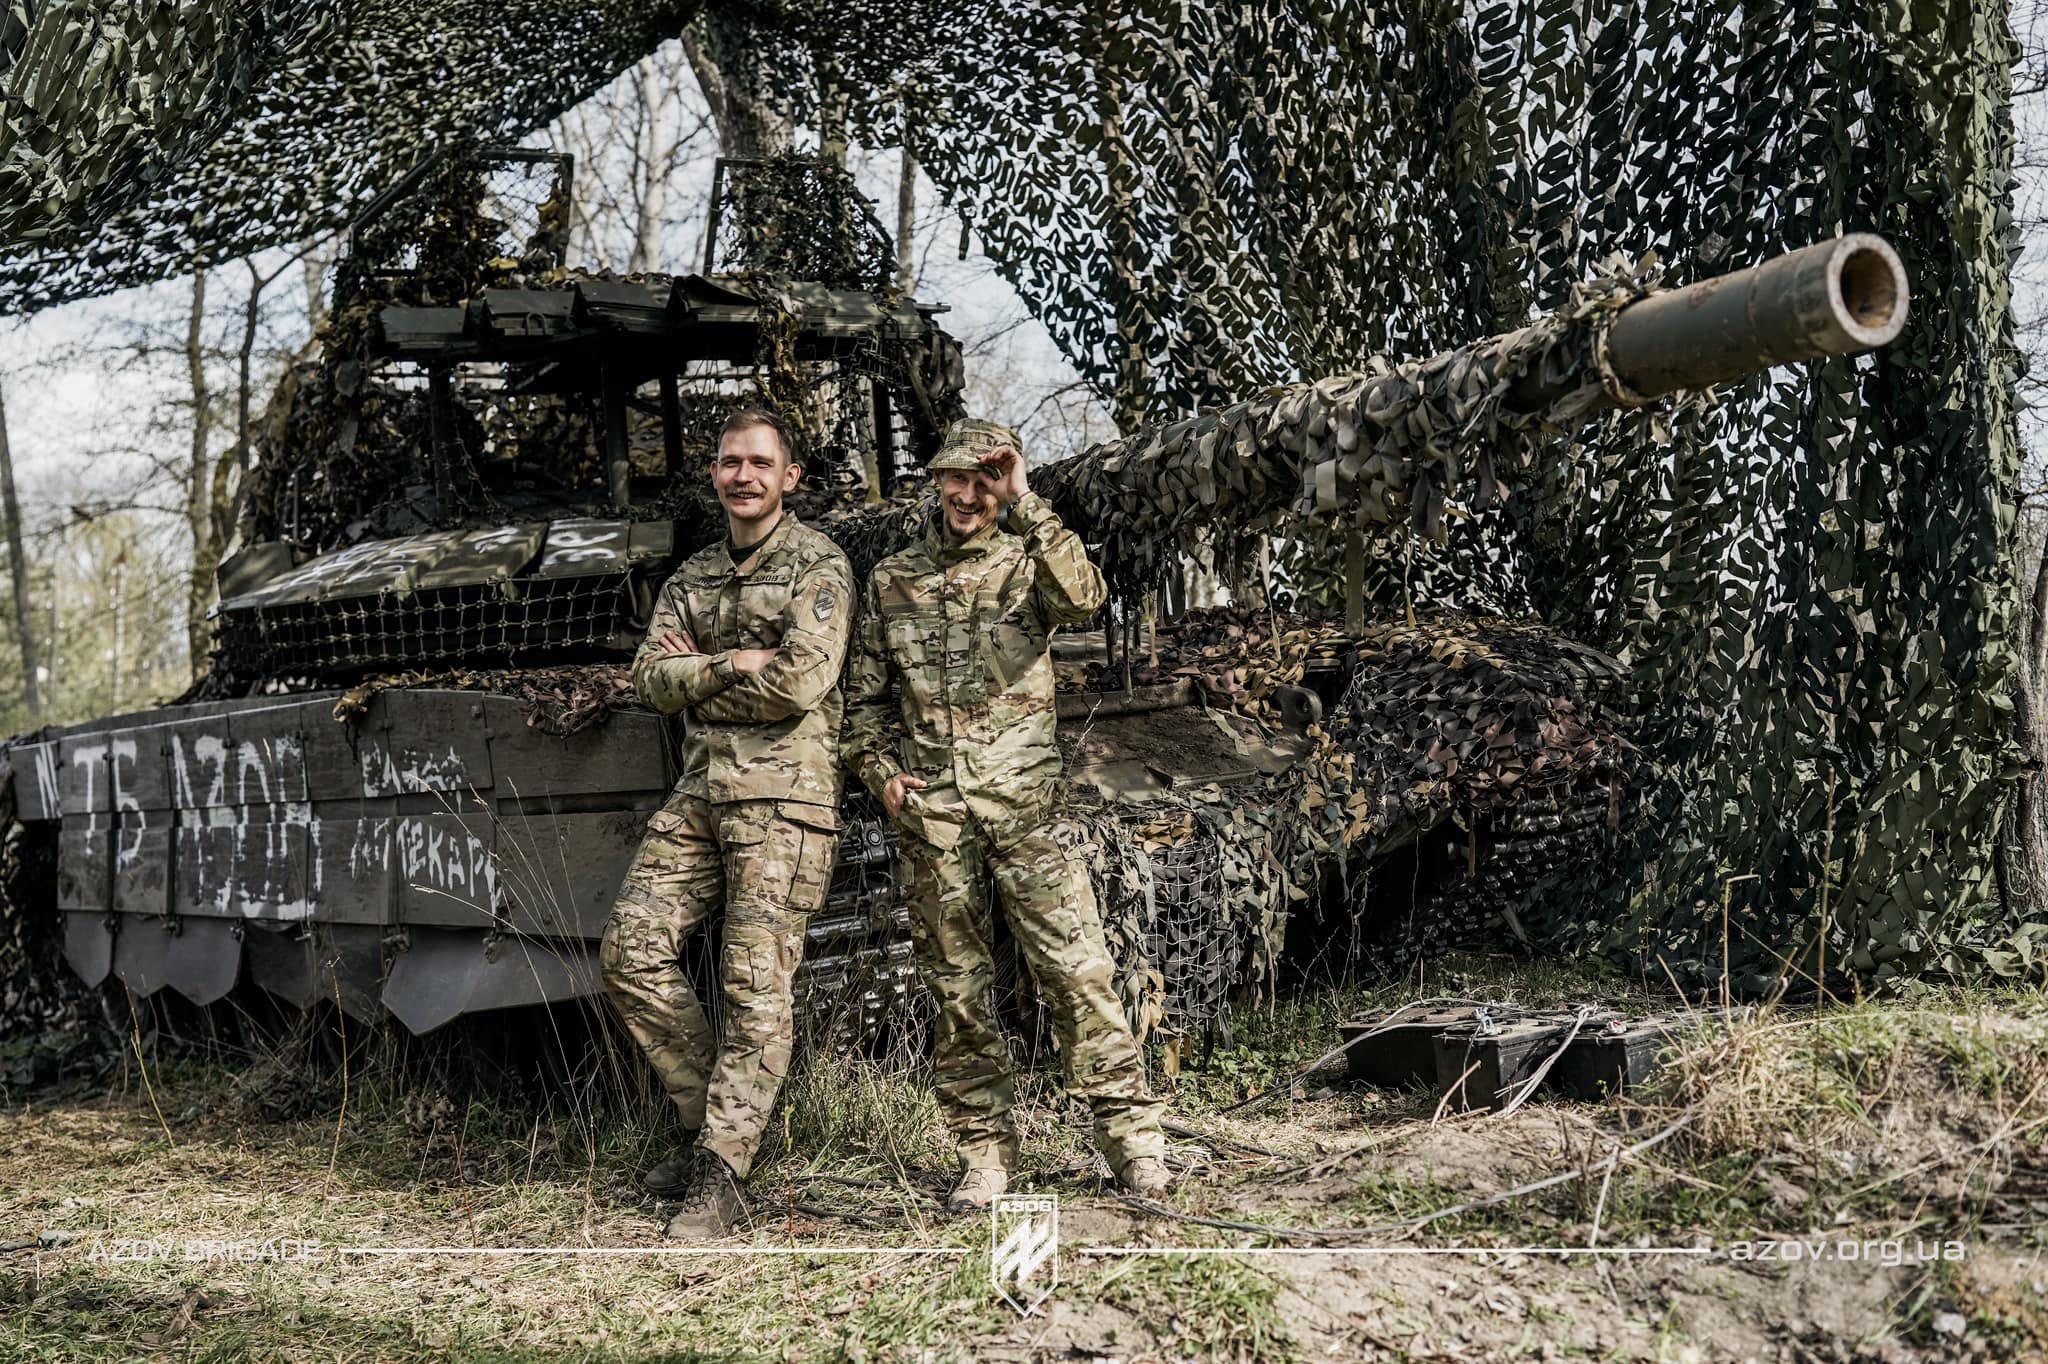 صور الجيش الاوكراني في الحرب الروسية-الاوكرانية.........متجدد GKpdhc2XkAA3LRz?format=jpg&name=large